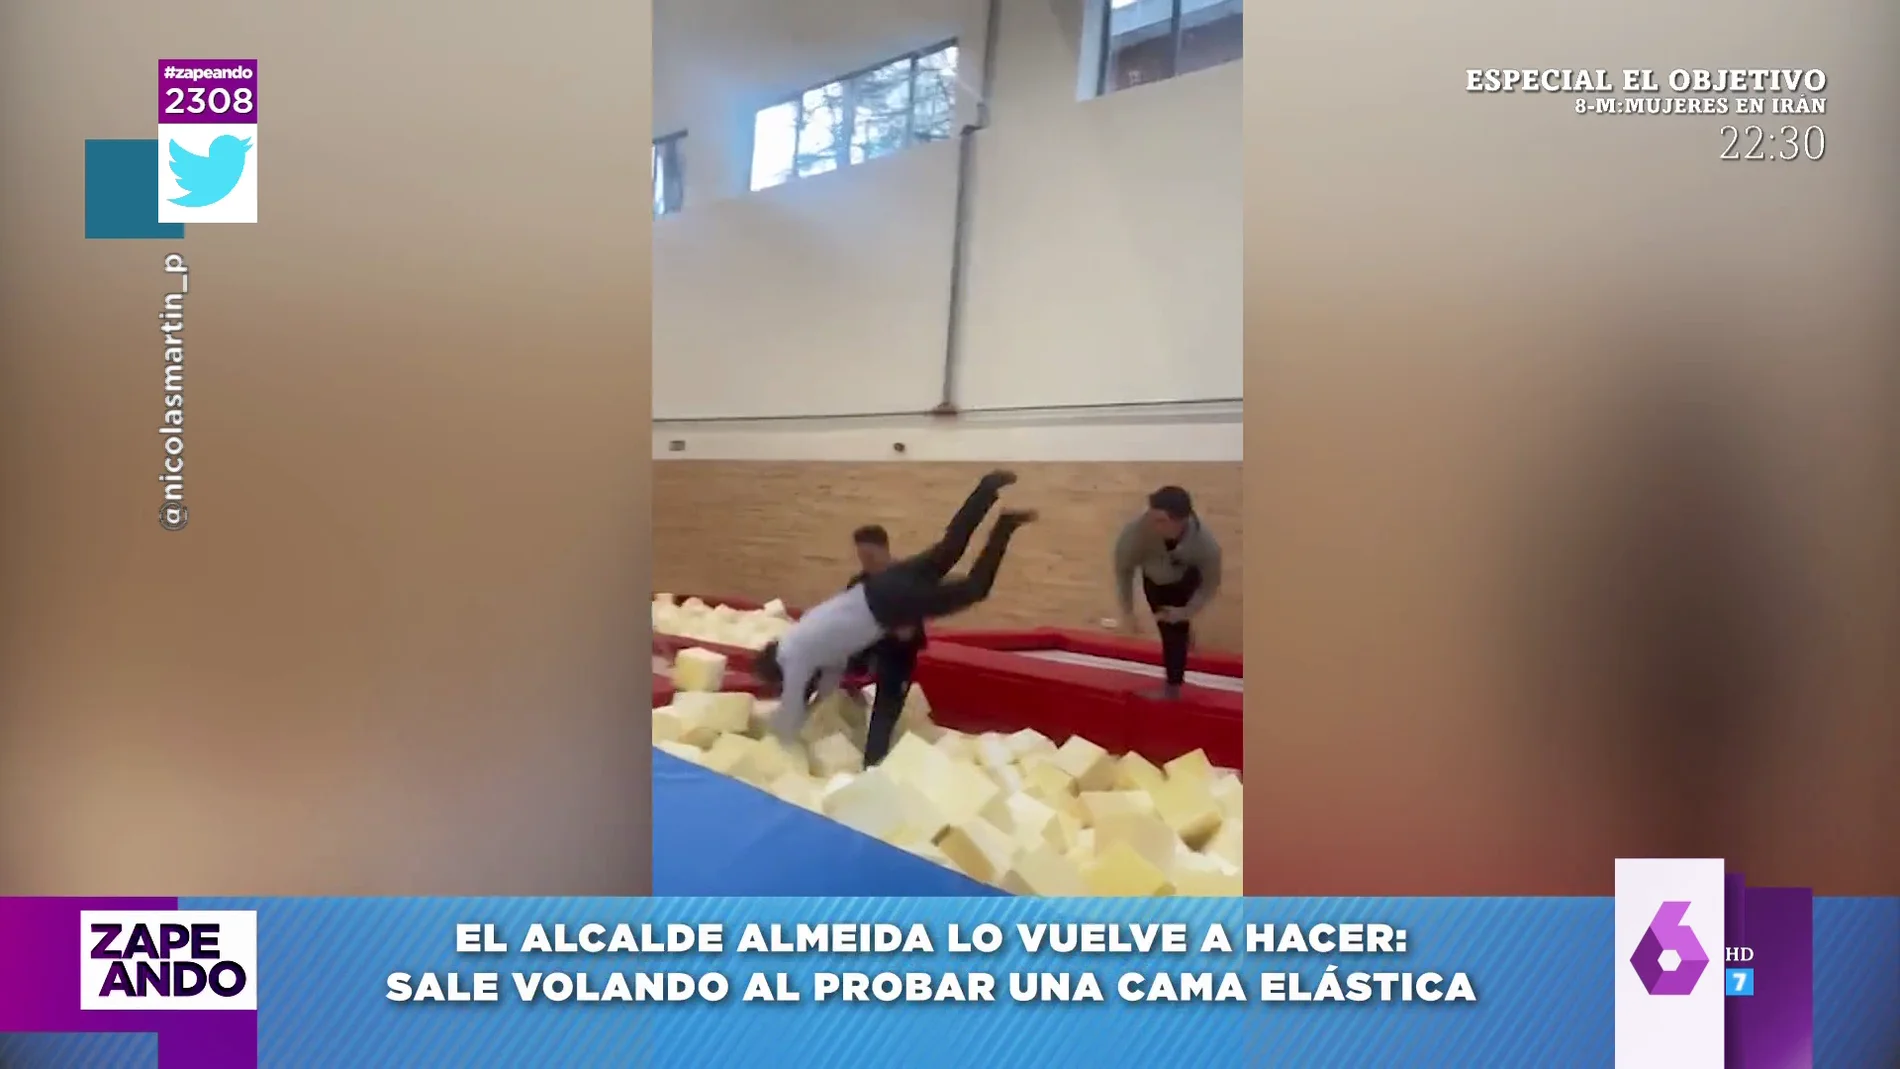 Dani Mateo y Quique Peinado, tras caer Almeida de una cama elástica: "El de negro es de Izquierda Unida"